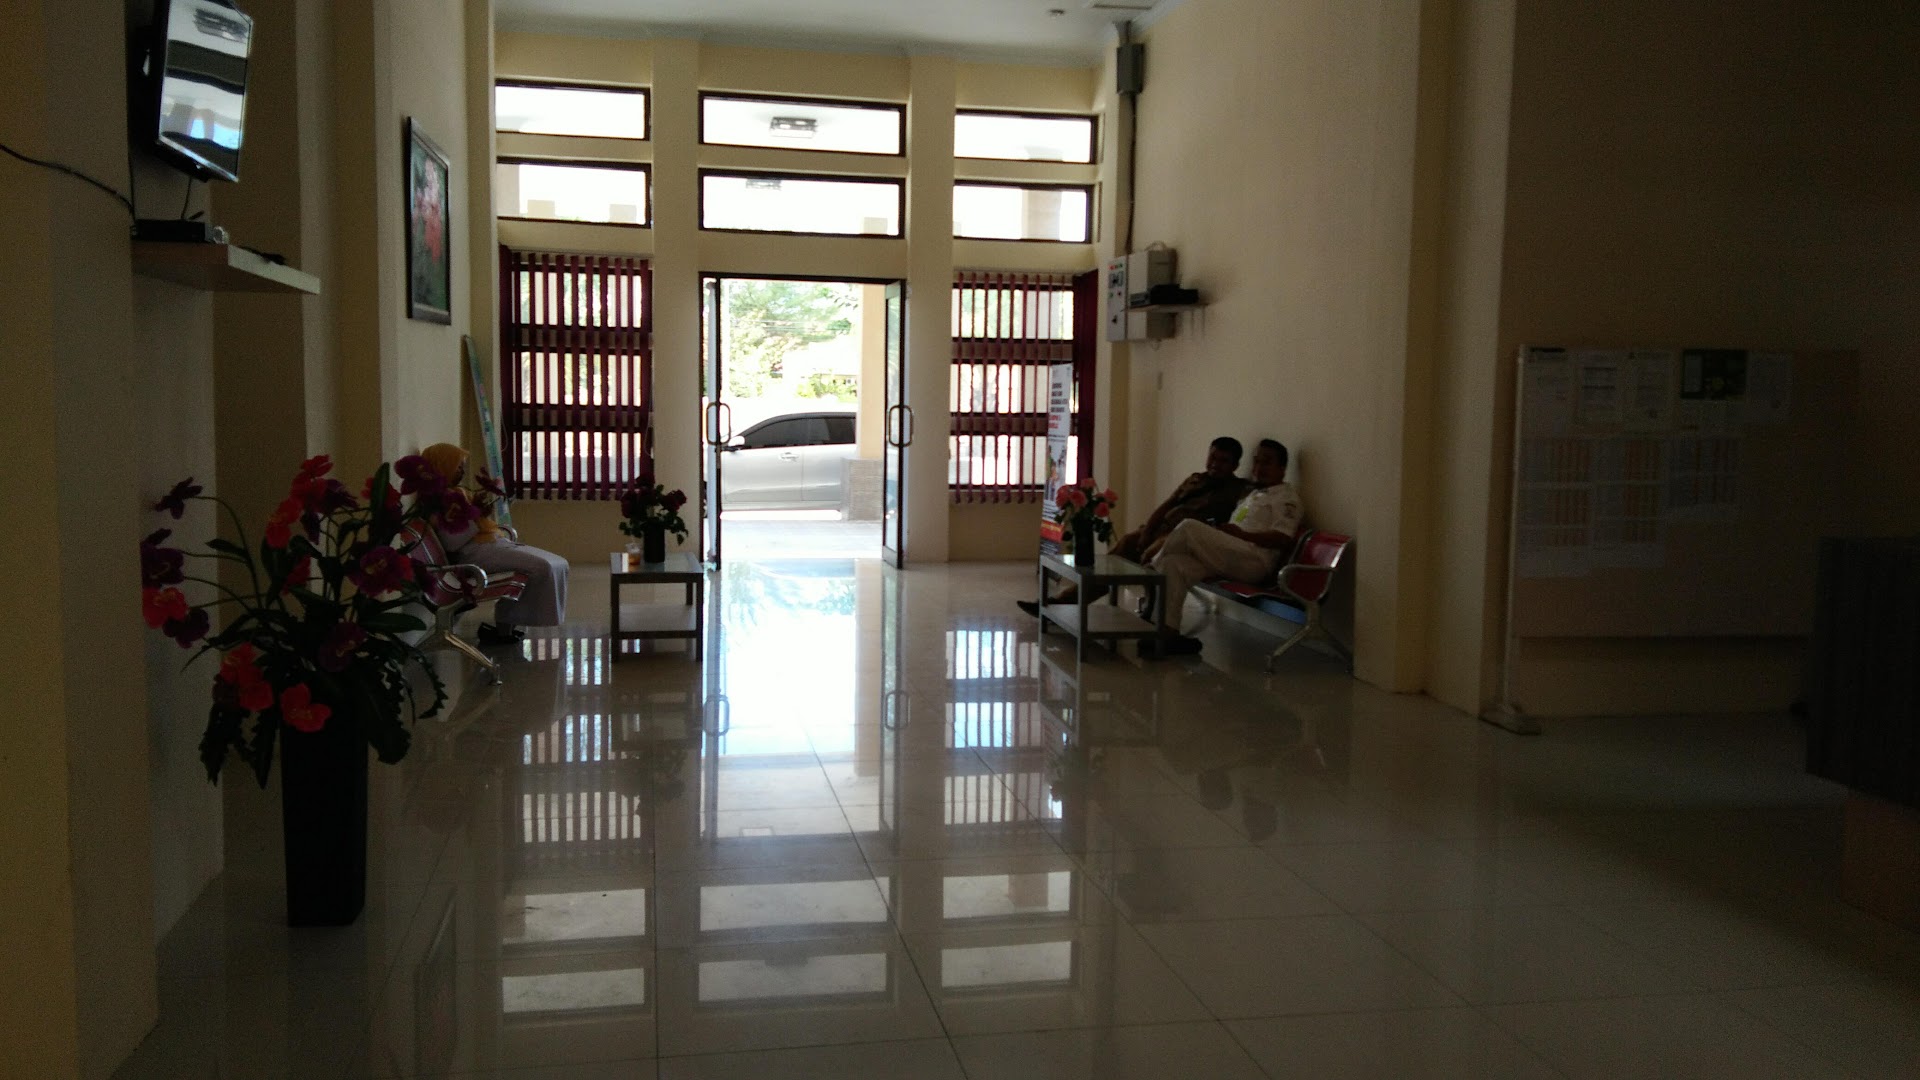 Kantor Dinas Kesehatan Kabupaten Aceh Singkil Photo